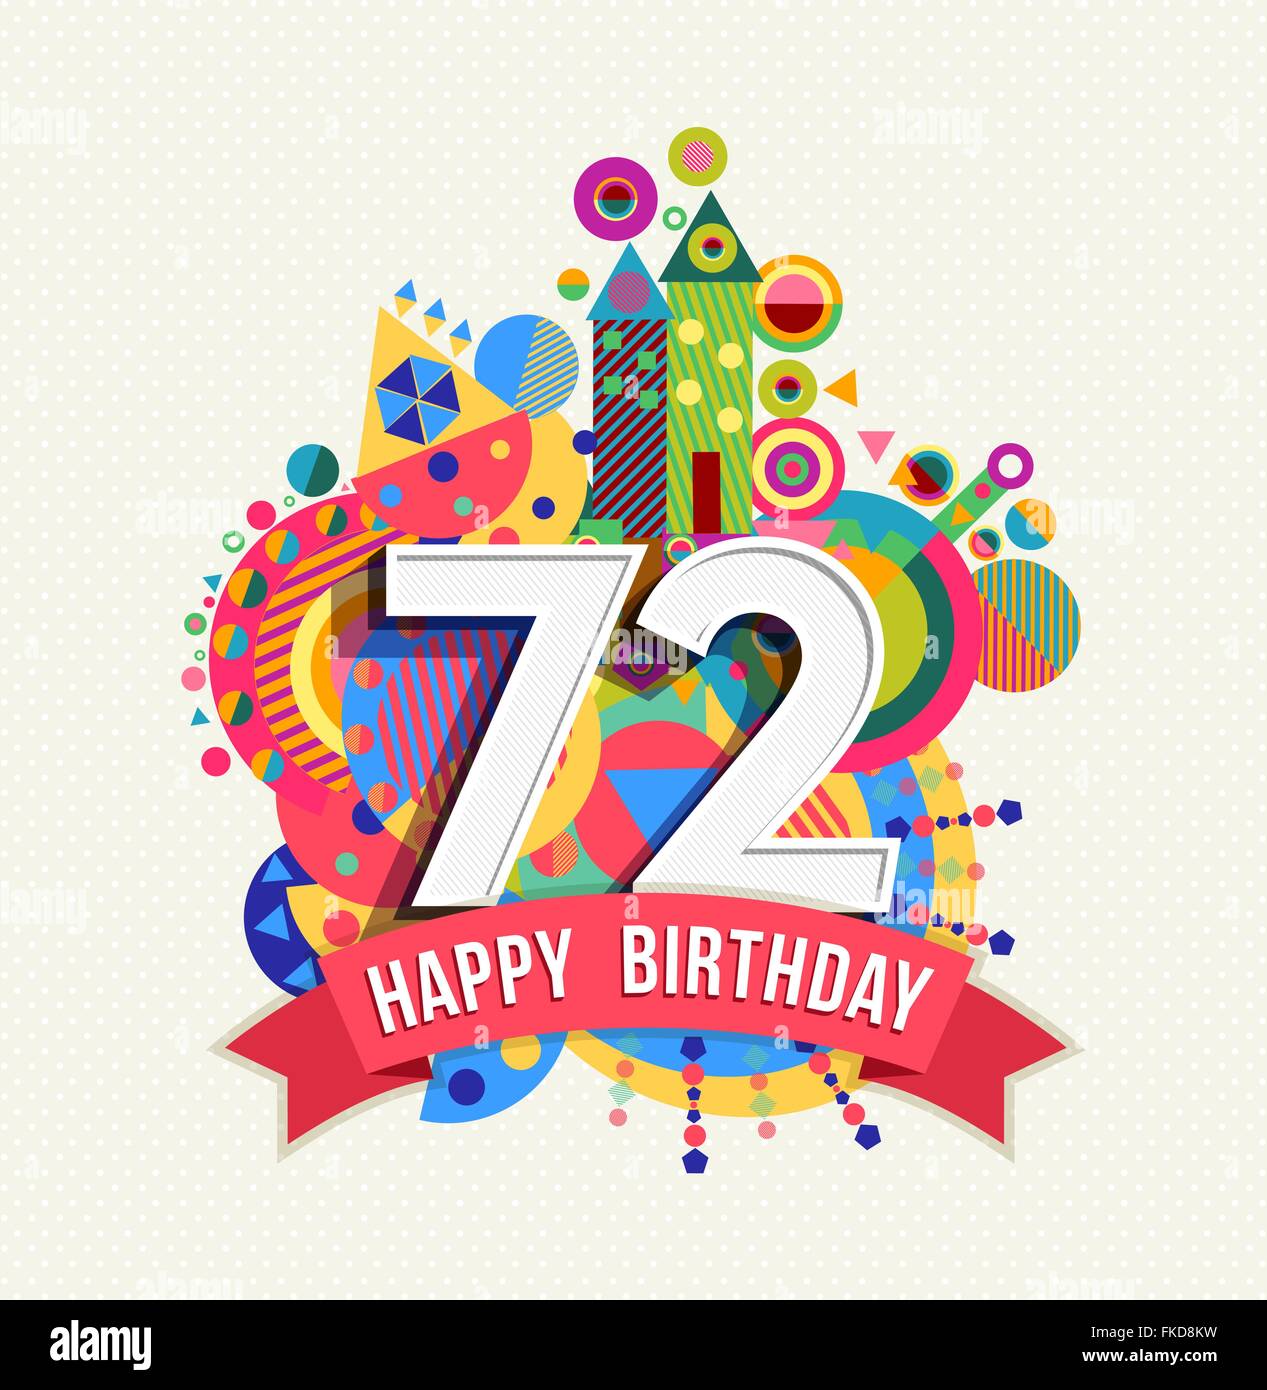 Joyeux anniversaire 72, 72 ans, plaisir célébration anniversaire carte postale avec des étiquettes de texte, nombre et géométrie colorée Illustration de Vecteur